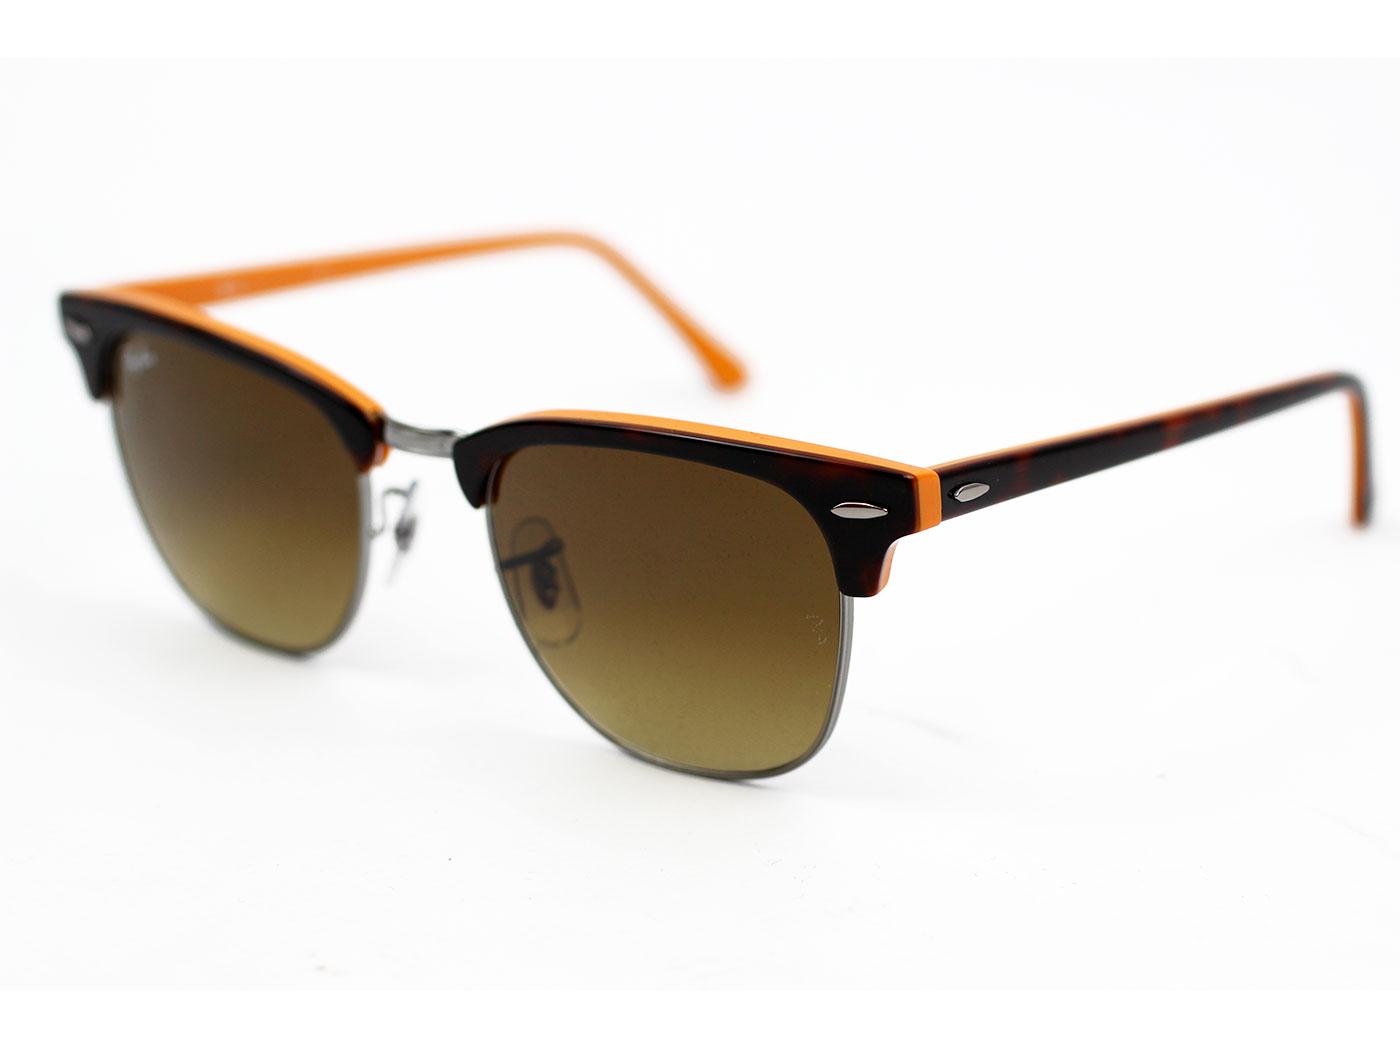 Ray-Ban Clubmaster Retro Mod Sunglasses (Orange)